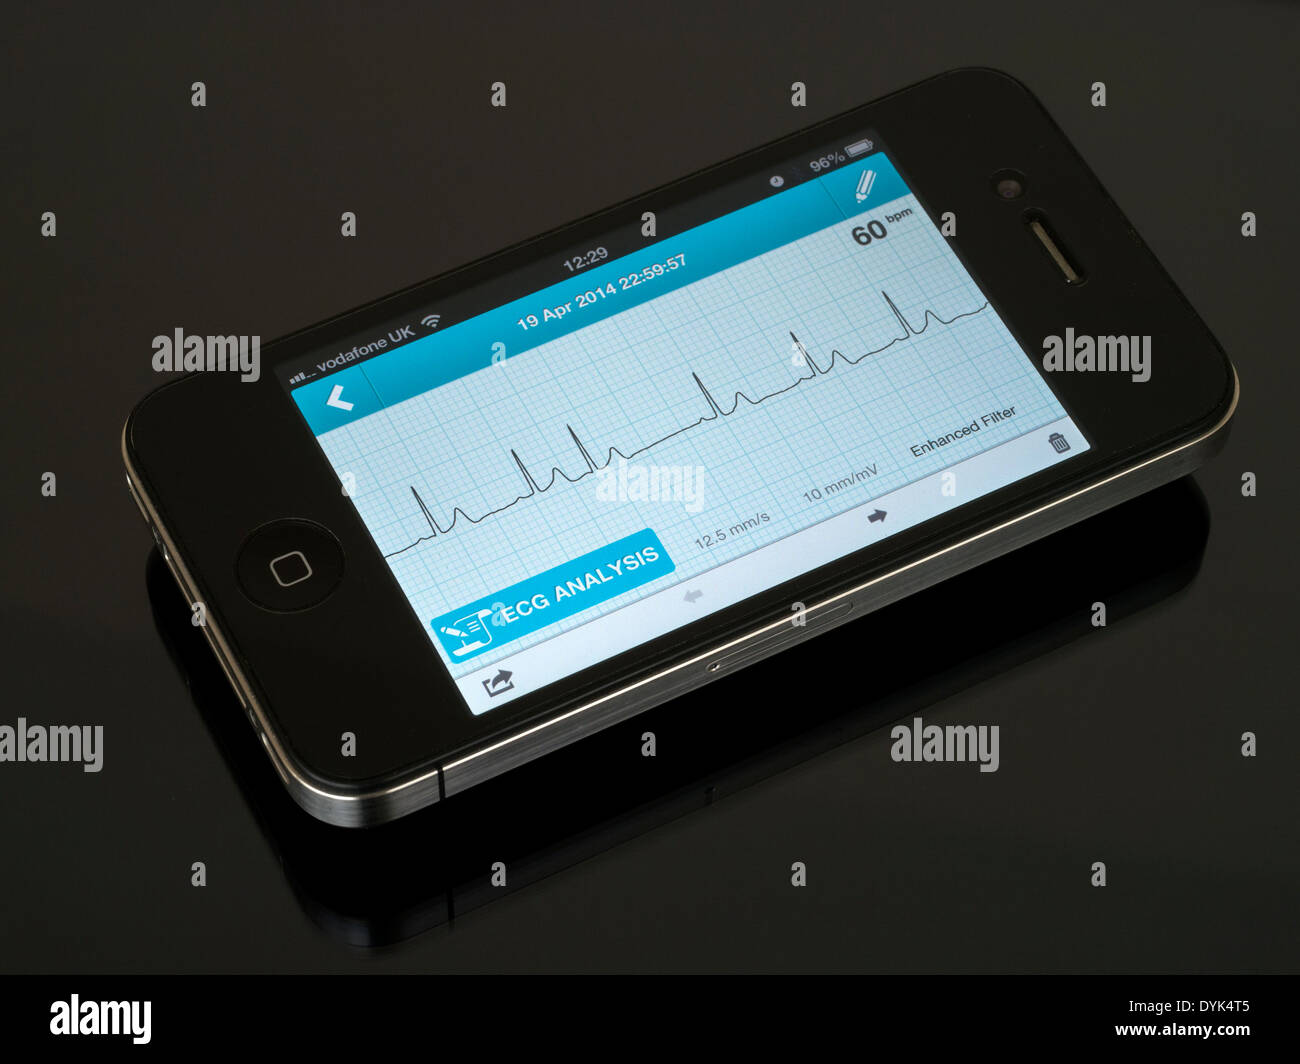 ECG portatile EKG Cardiofrequenzimetro App in esecuzione su iPhone 4 che mostra sinusale normale ritmo cardiaco tracciato con un battito ectopico Foto Stock